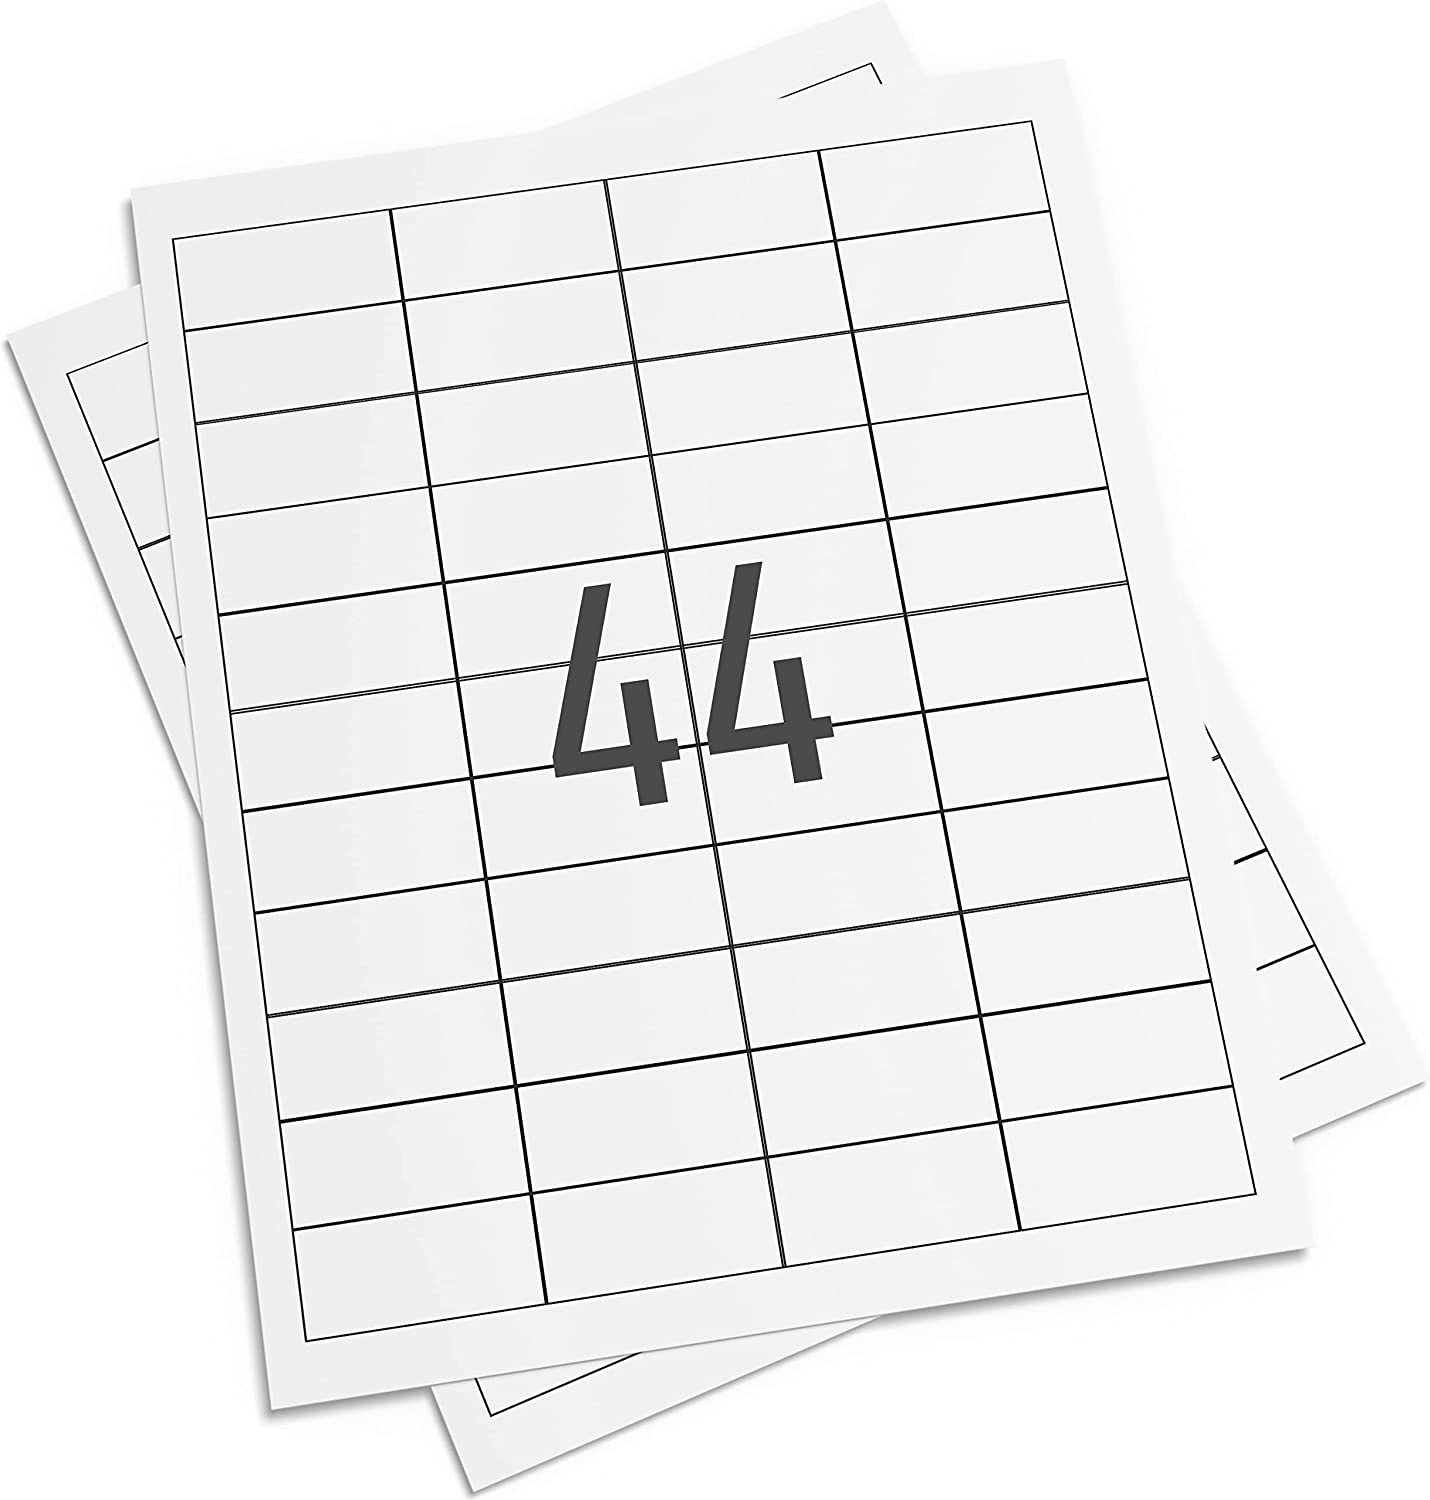 Multi-purpose, A4 Printer Labels, 48.5mm x 25.4mm, 44 Per Sheet, 1100 labels per pack